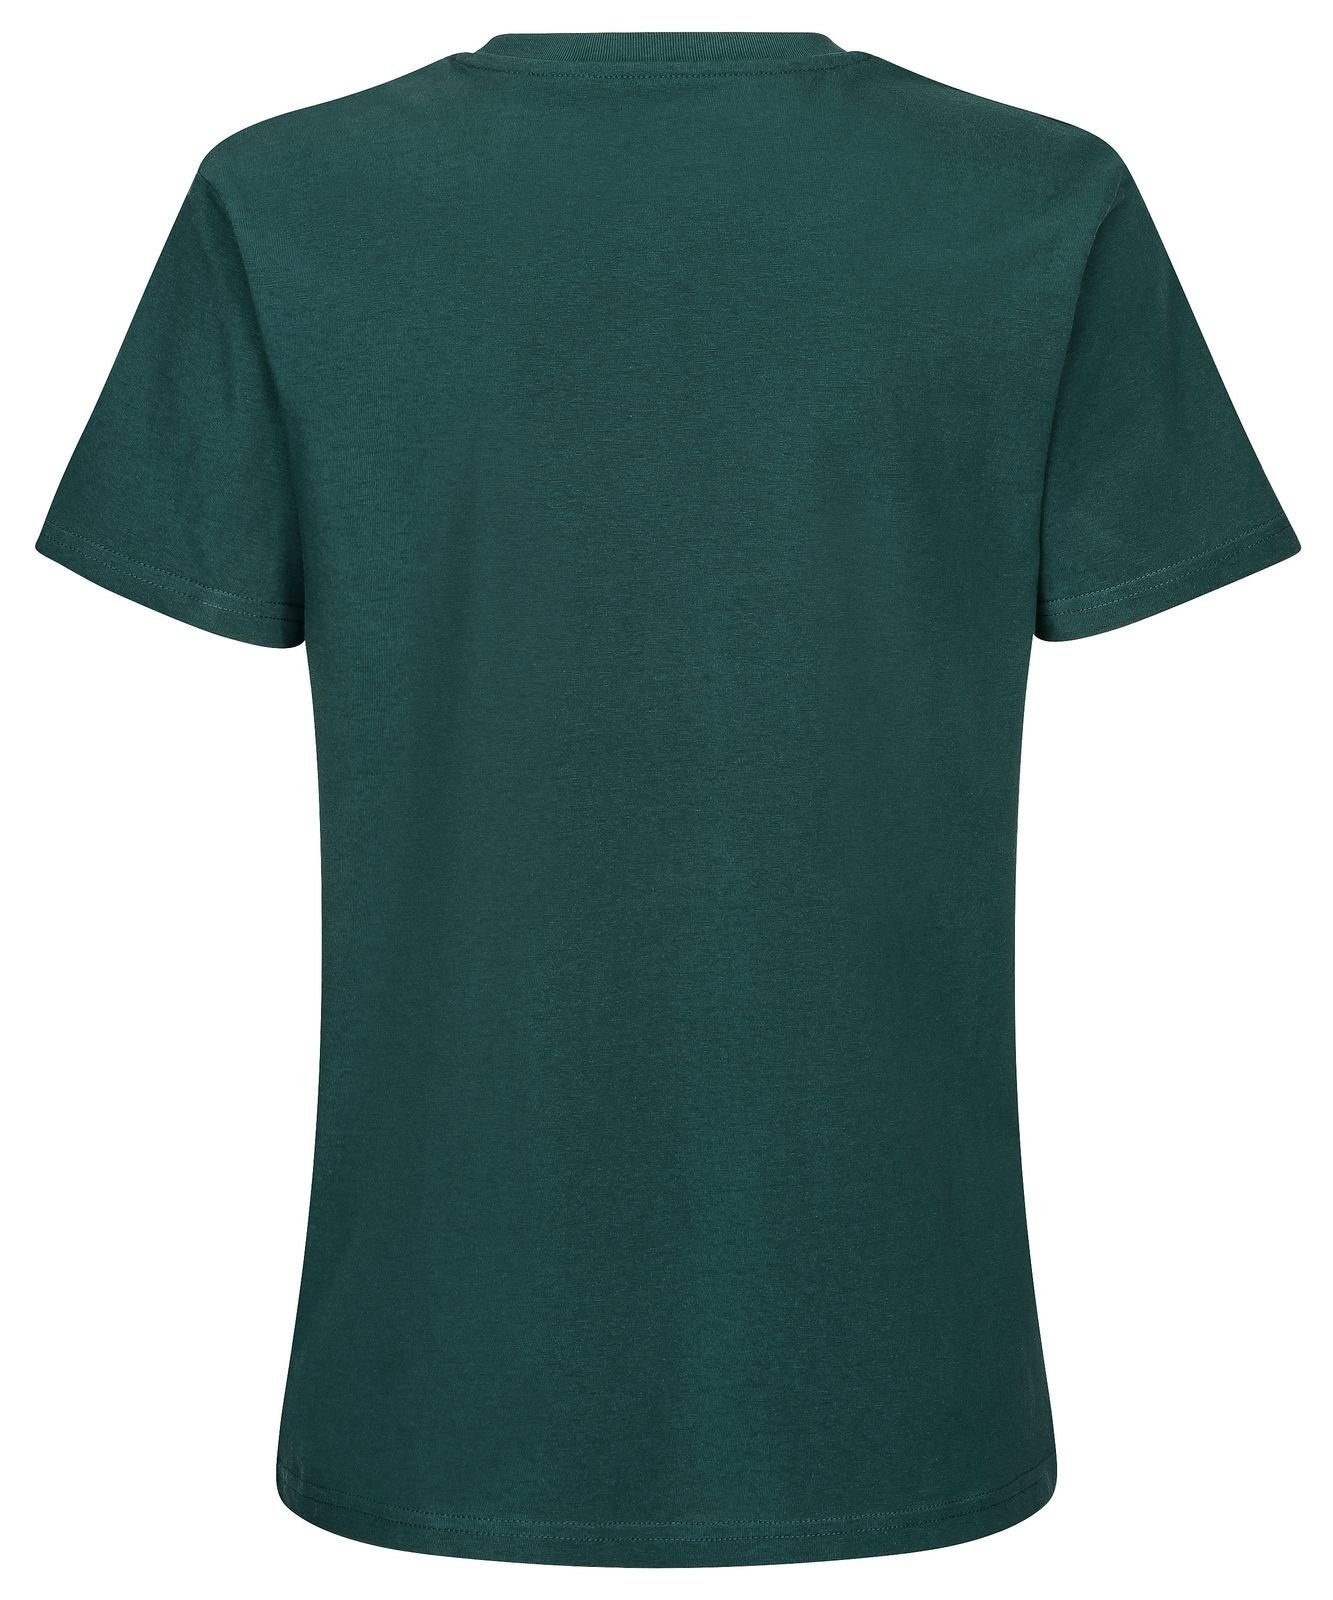 Biobaumwolle T-Shirt unisex basic nachhaltig 100% & fair Gradnetz leather dunkelgrün